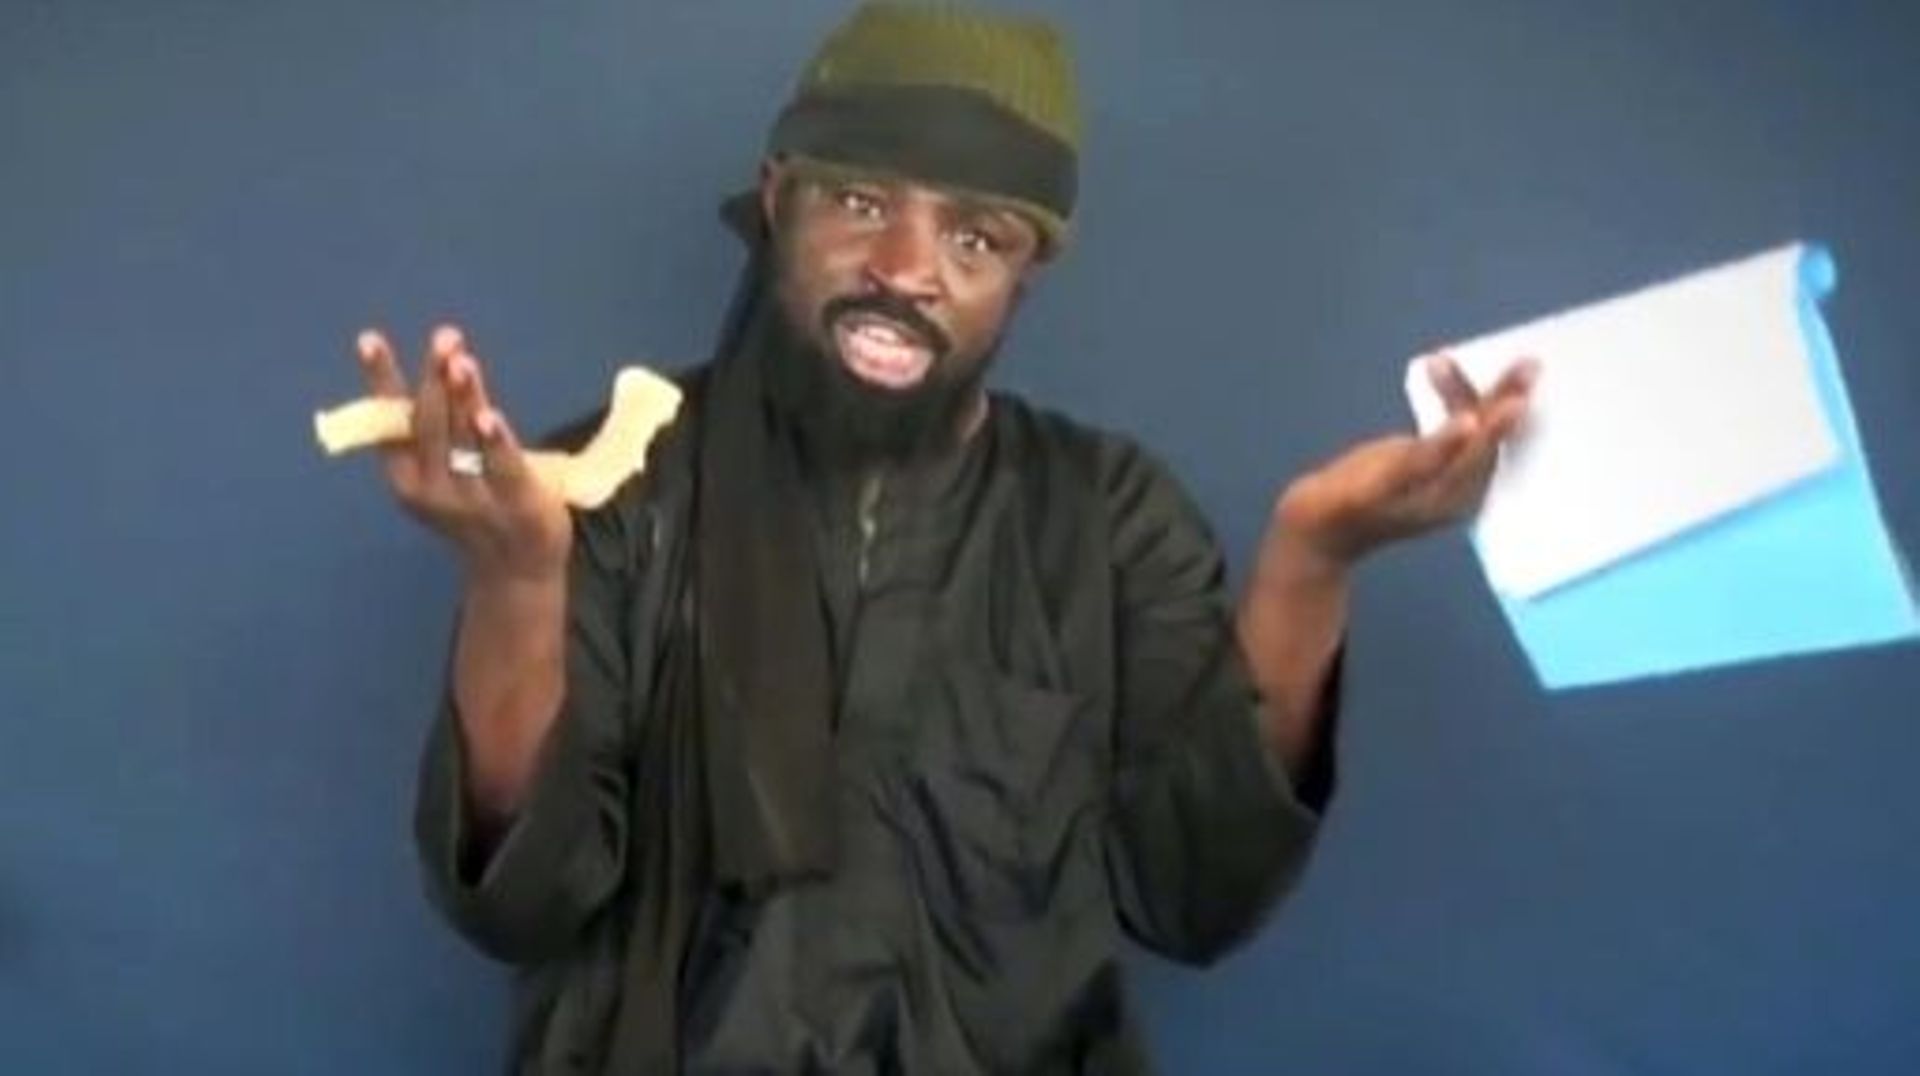 Capture d'écran faite le 18 février 2015 d'une vidéo diffusée par Boko Haram montrant le leader du groupe islamiste, Abubakar Shekau, en train de diffuser un message depuis un endroit non précisé